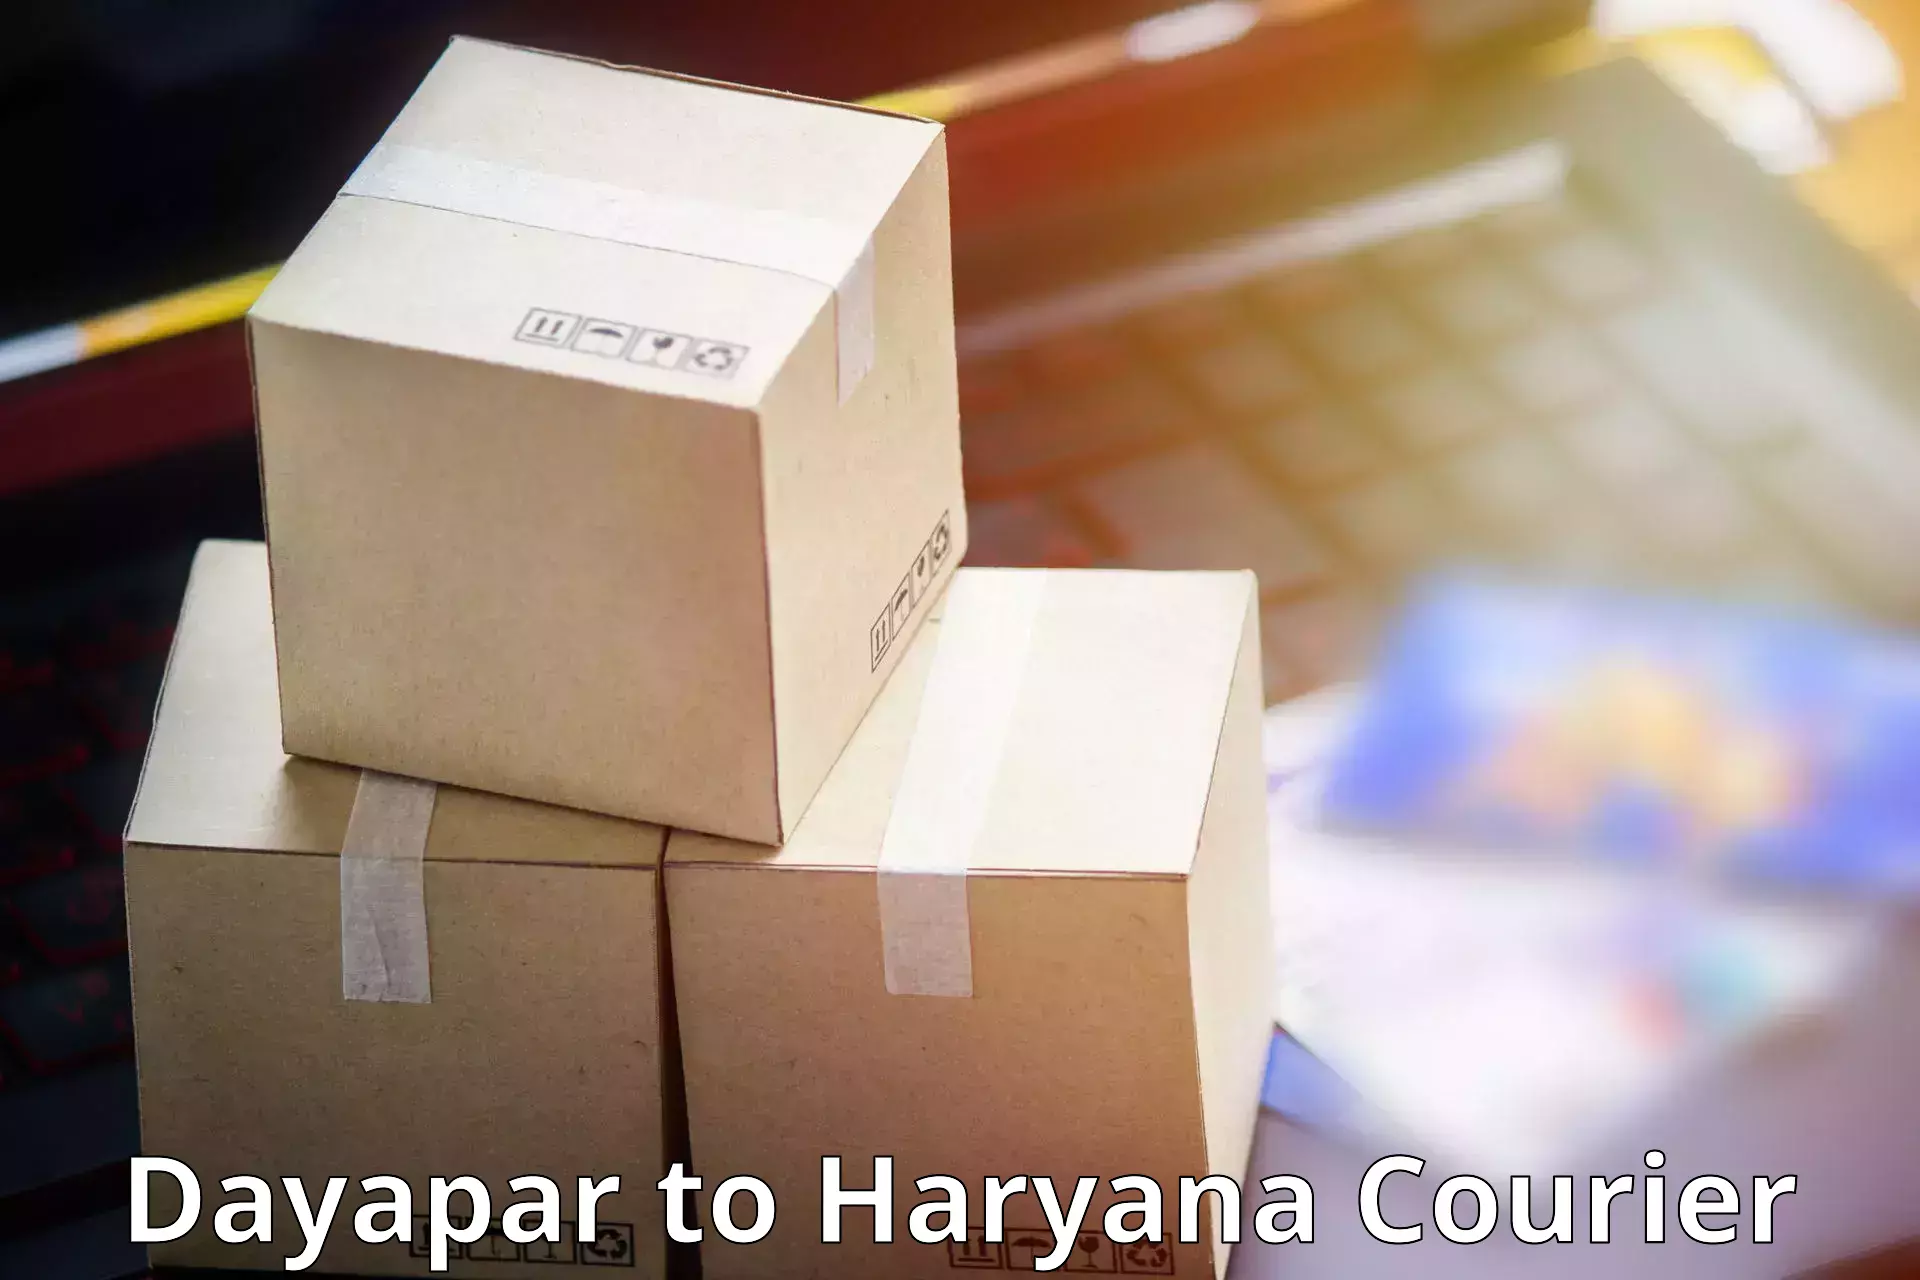 Courier service comparison Dayapar to Hisar